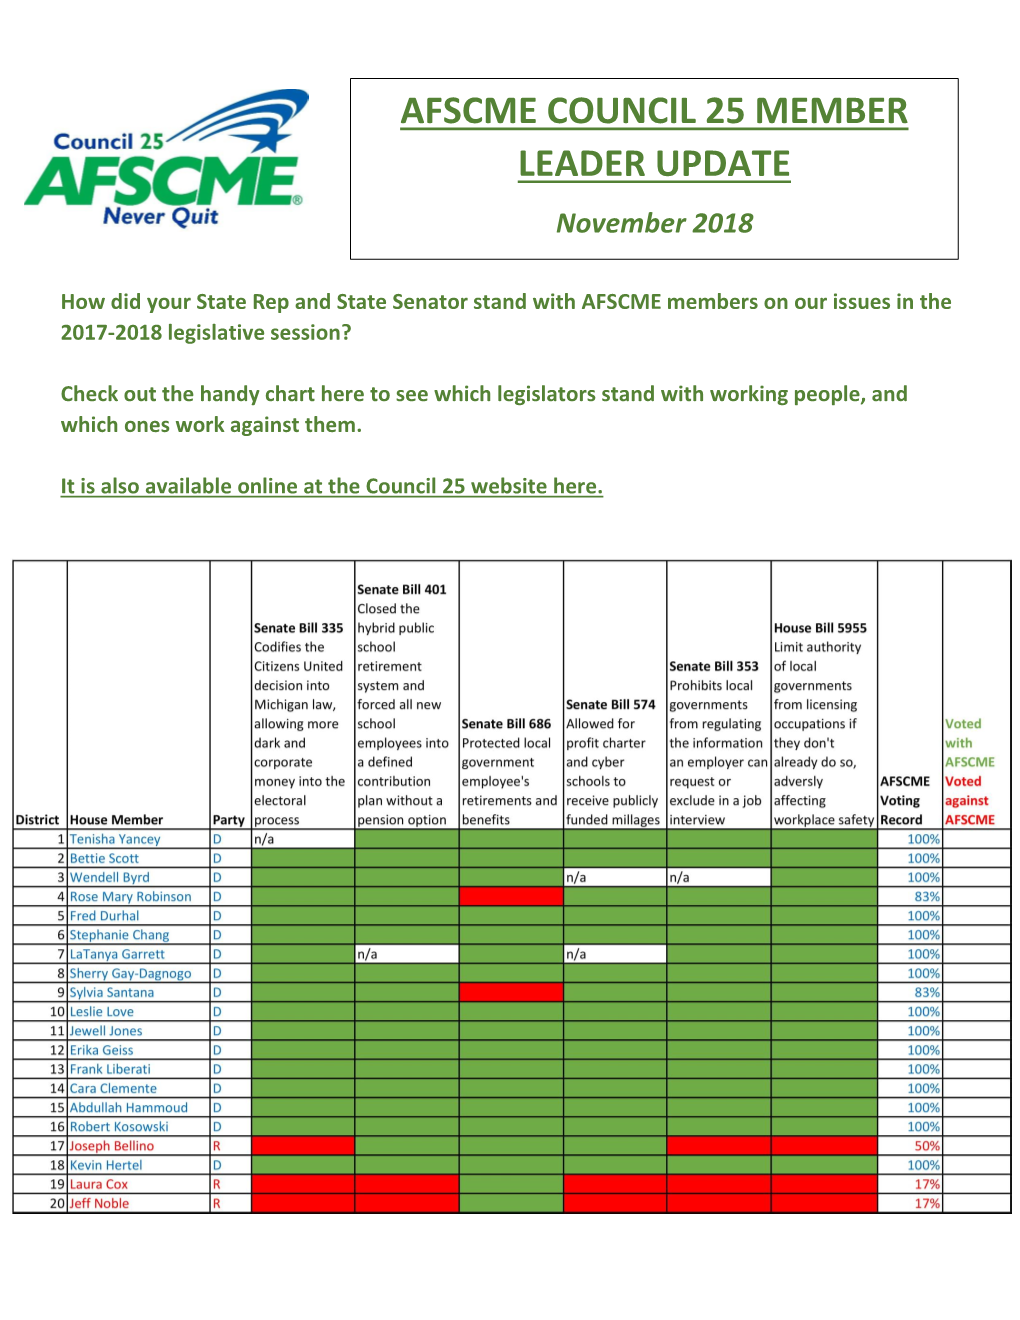 AFSCME COUNCIL 25 MEMBER LEADER UPDATE November 2018